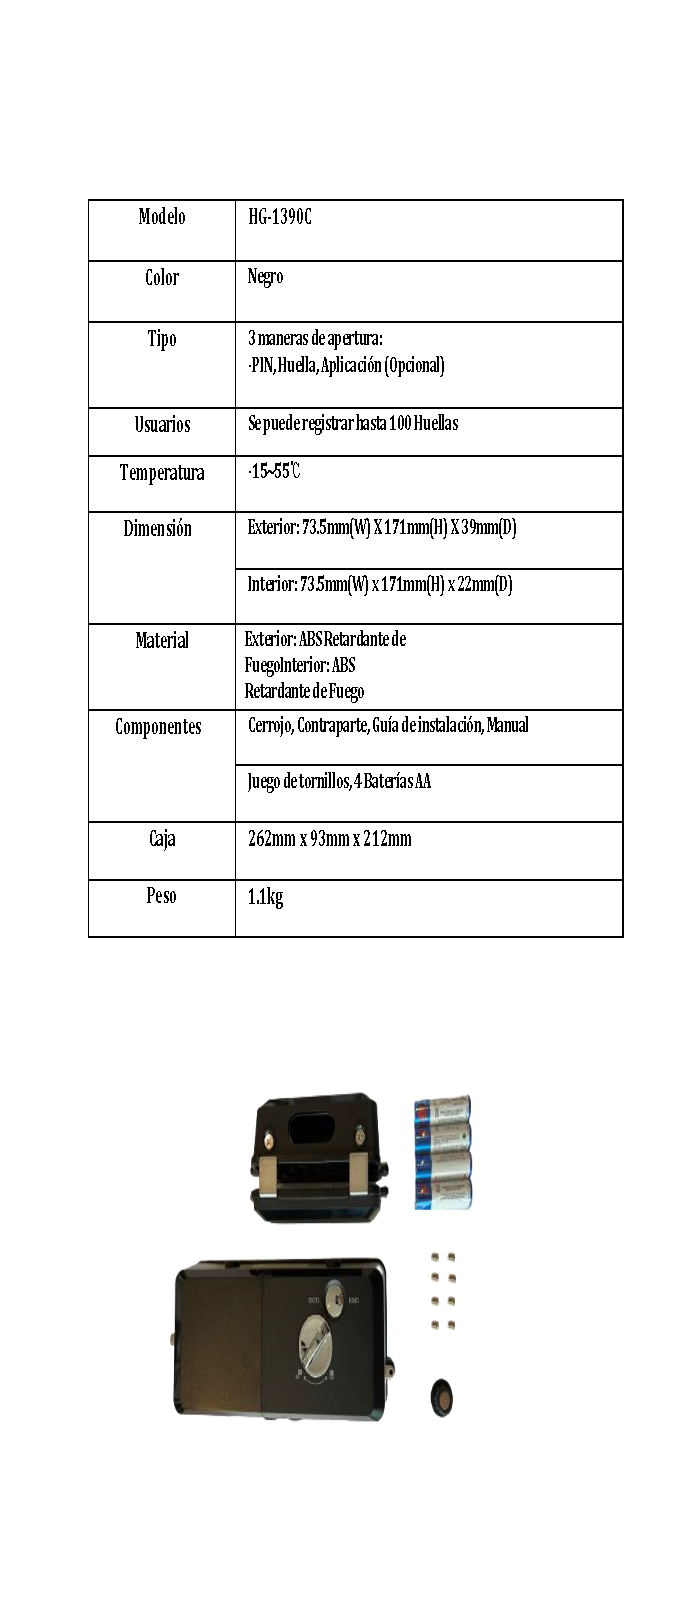 Cerrojo Digital Hione Mod HG-1390C para puertas de cristal